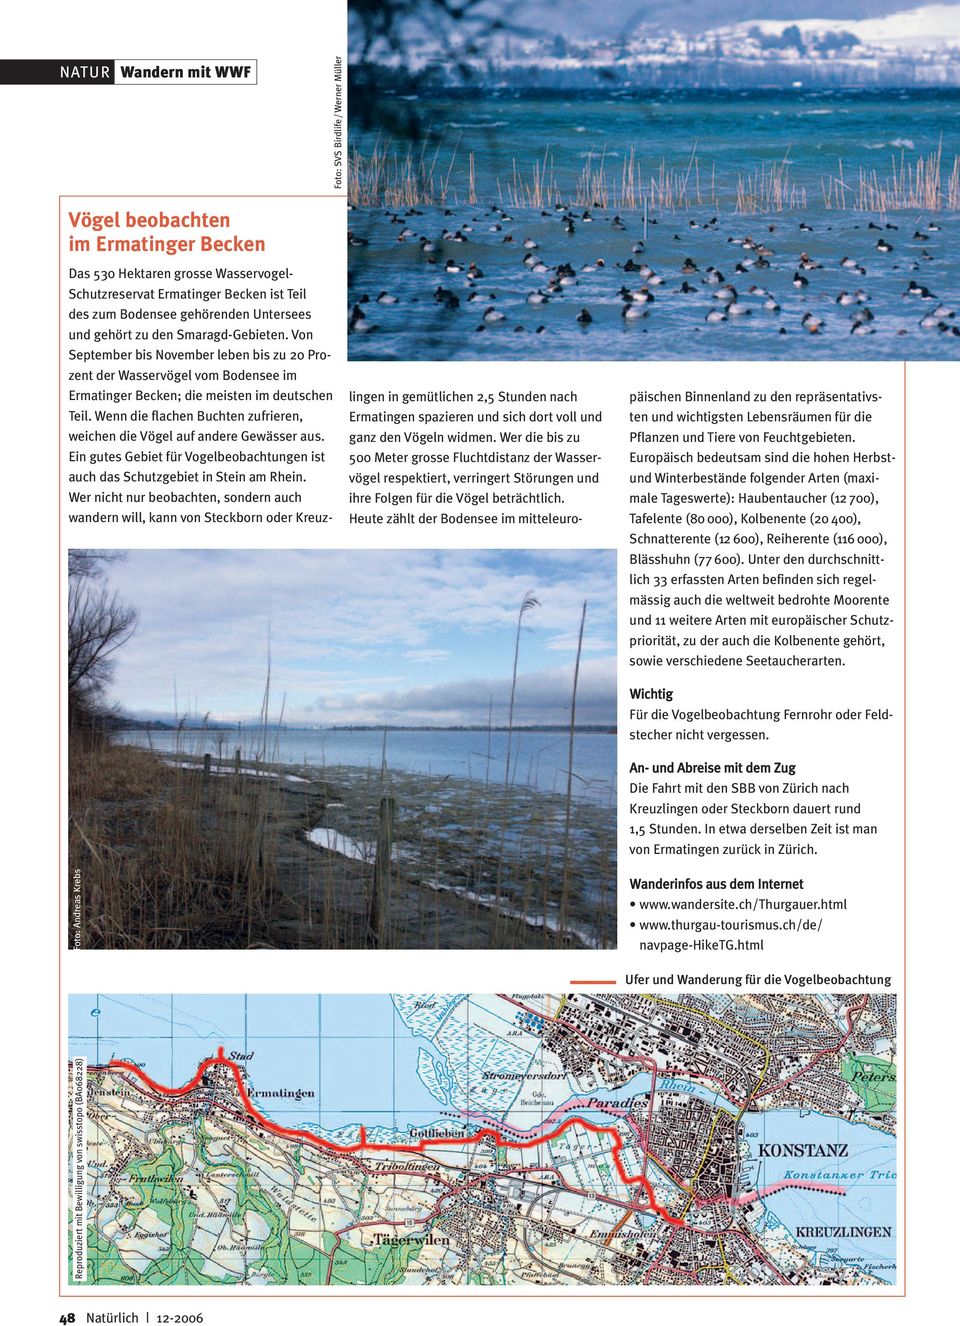 Wenn die flachen Buchten zufrieren, weichen die Vögel auf andere Gewässer aus. Ein gutes Gebiet für Vogelbeobachtungen ist auch das Schutzgebiet in Stein am Rhein.